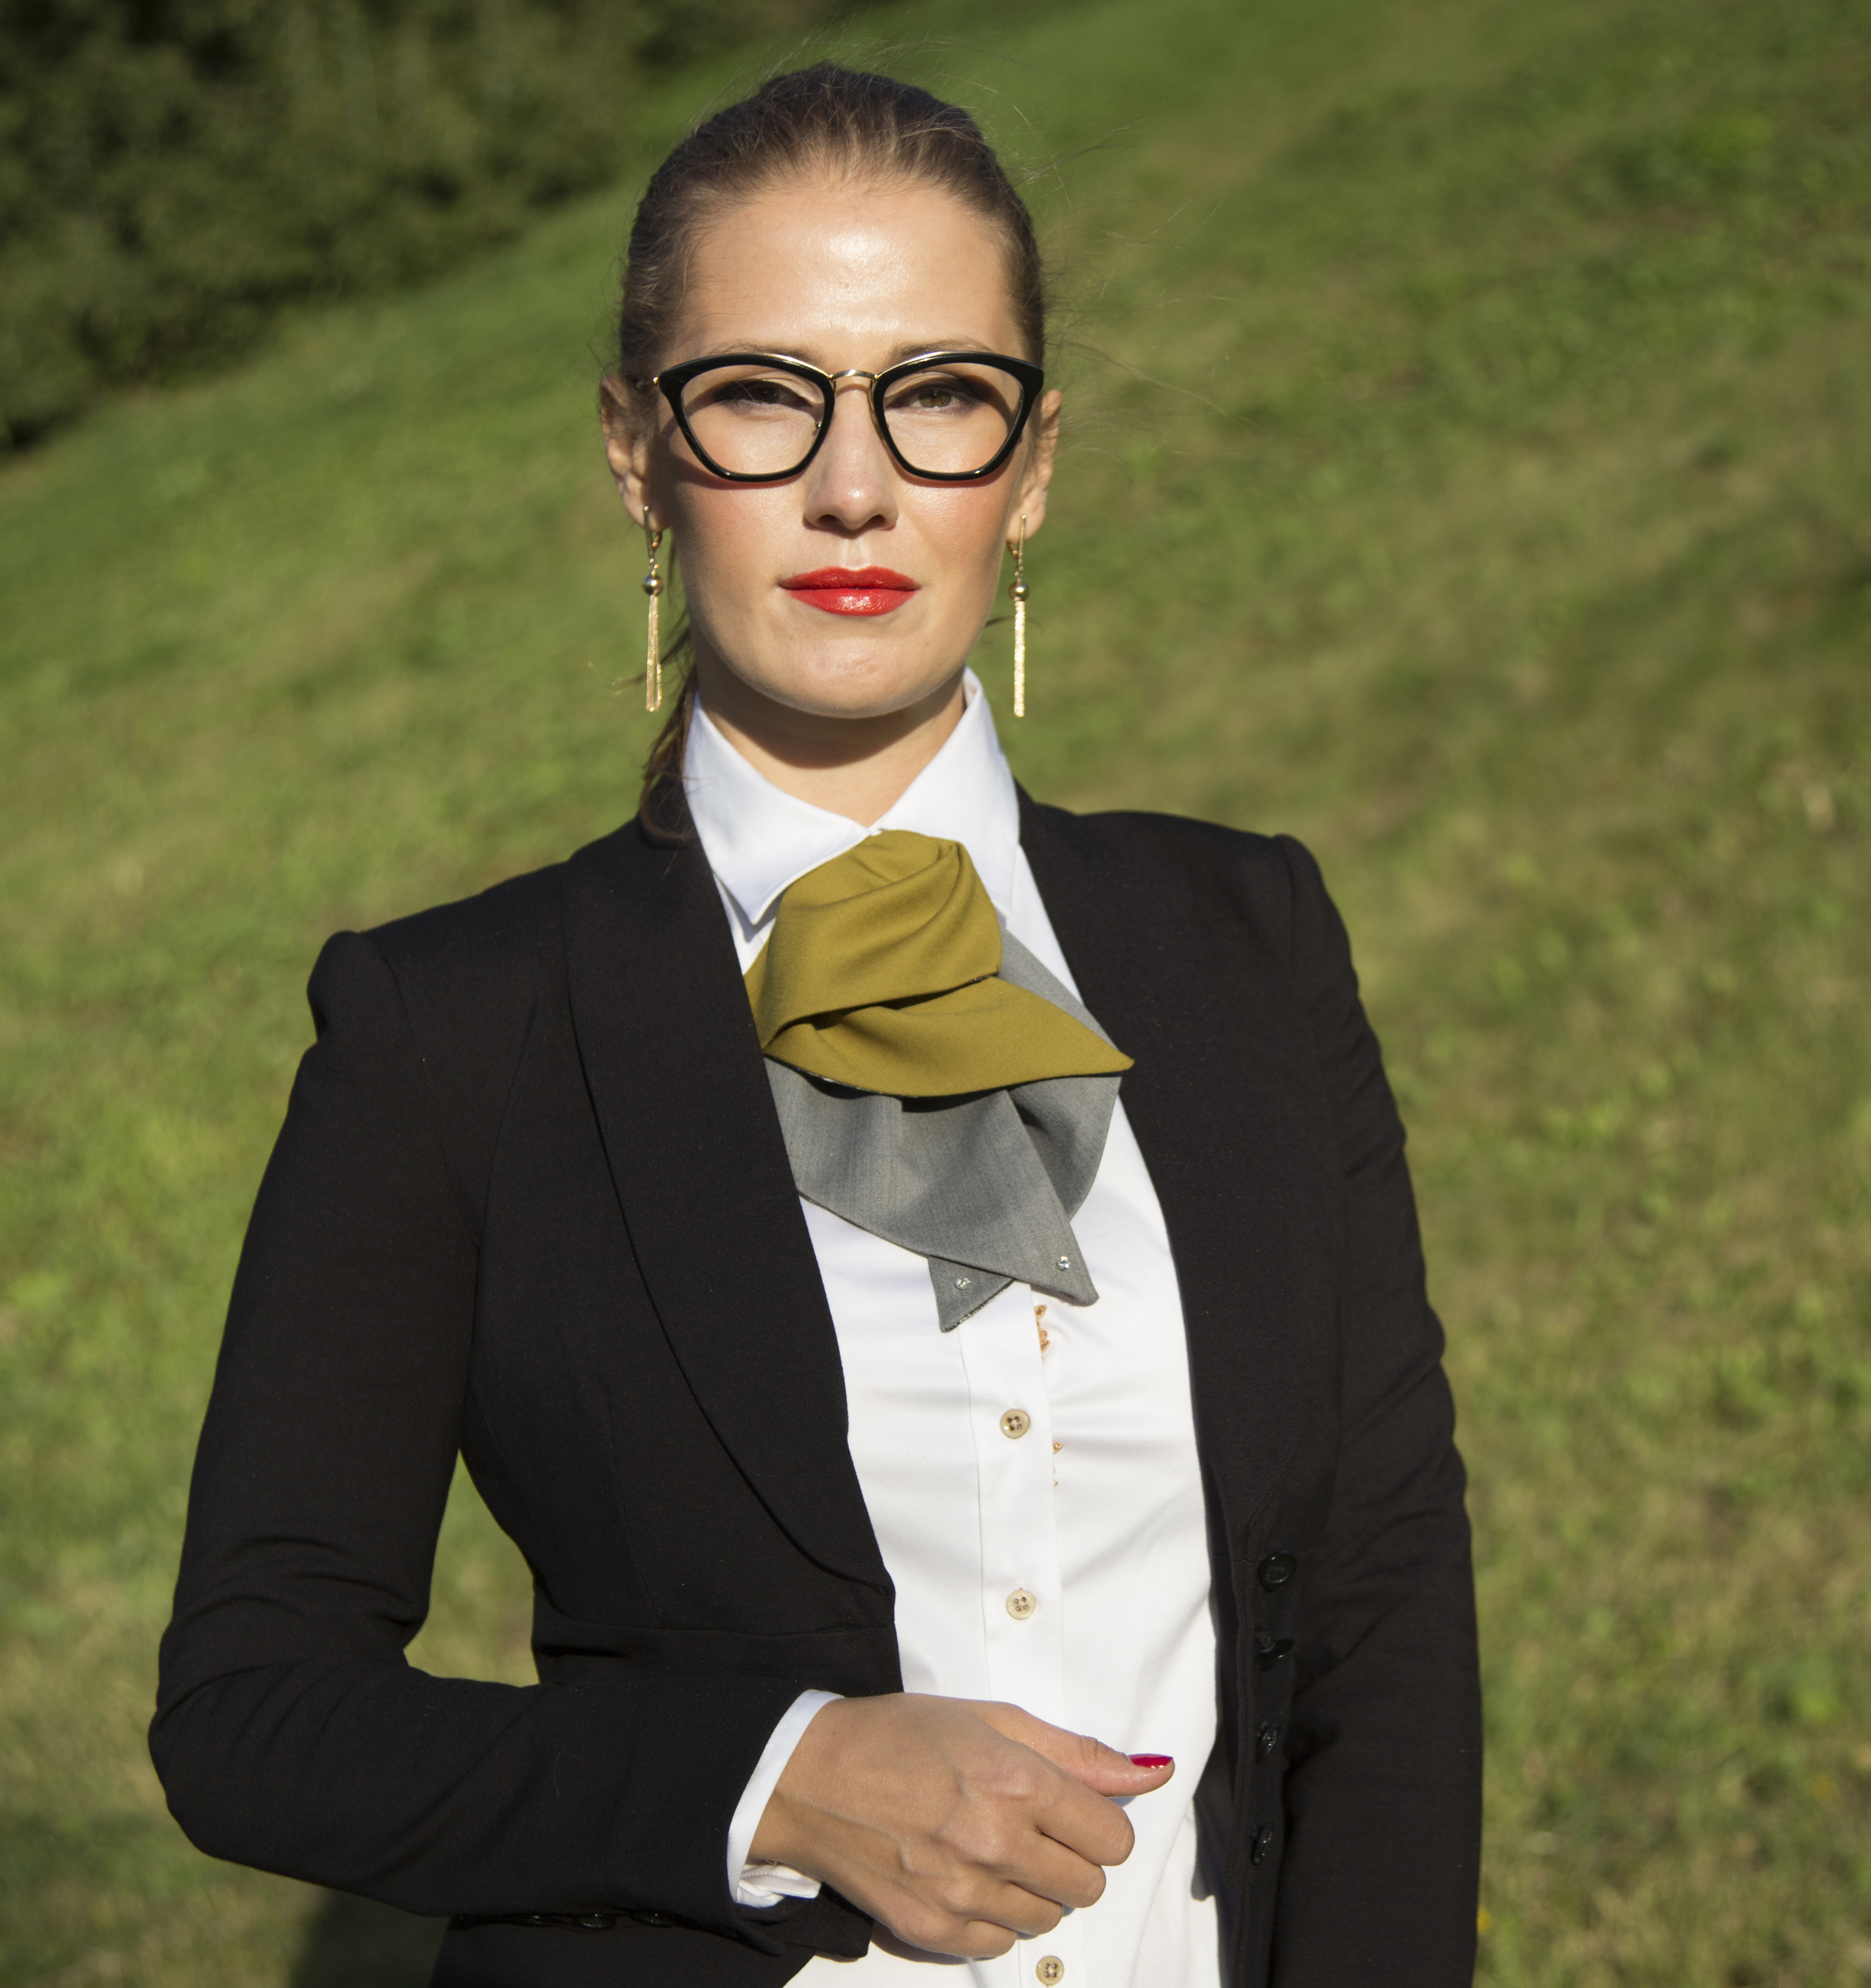 Женский деловой костюм с галстуком